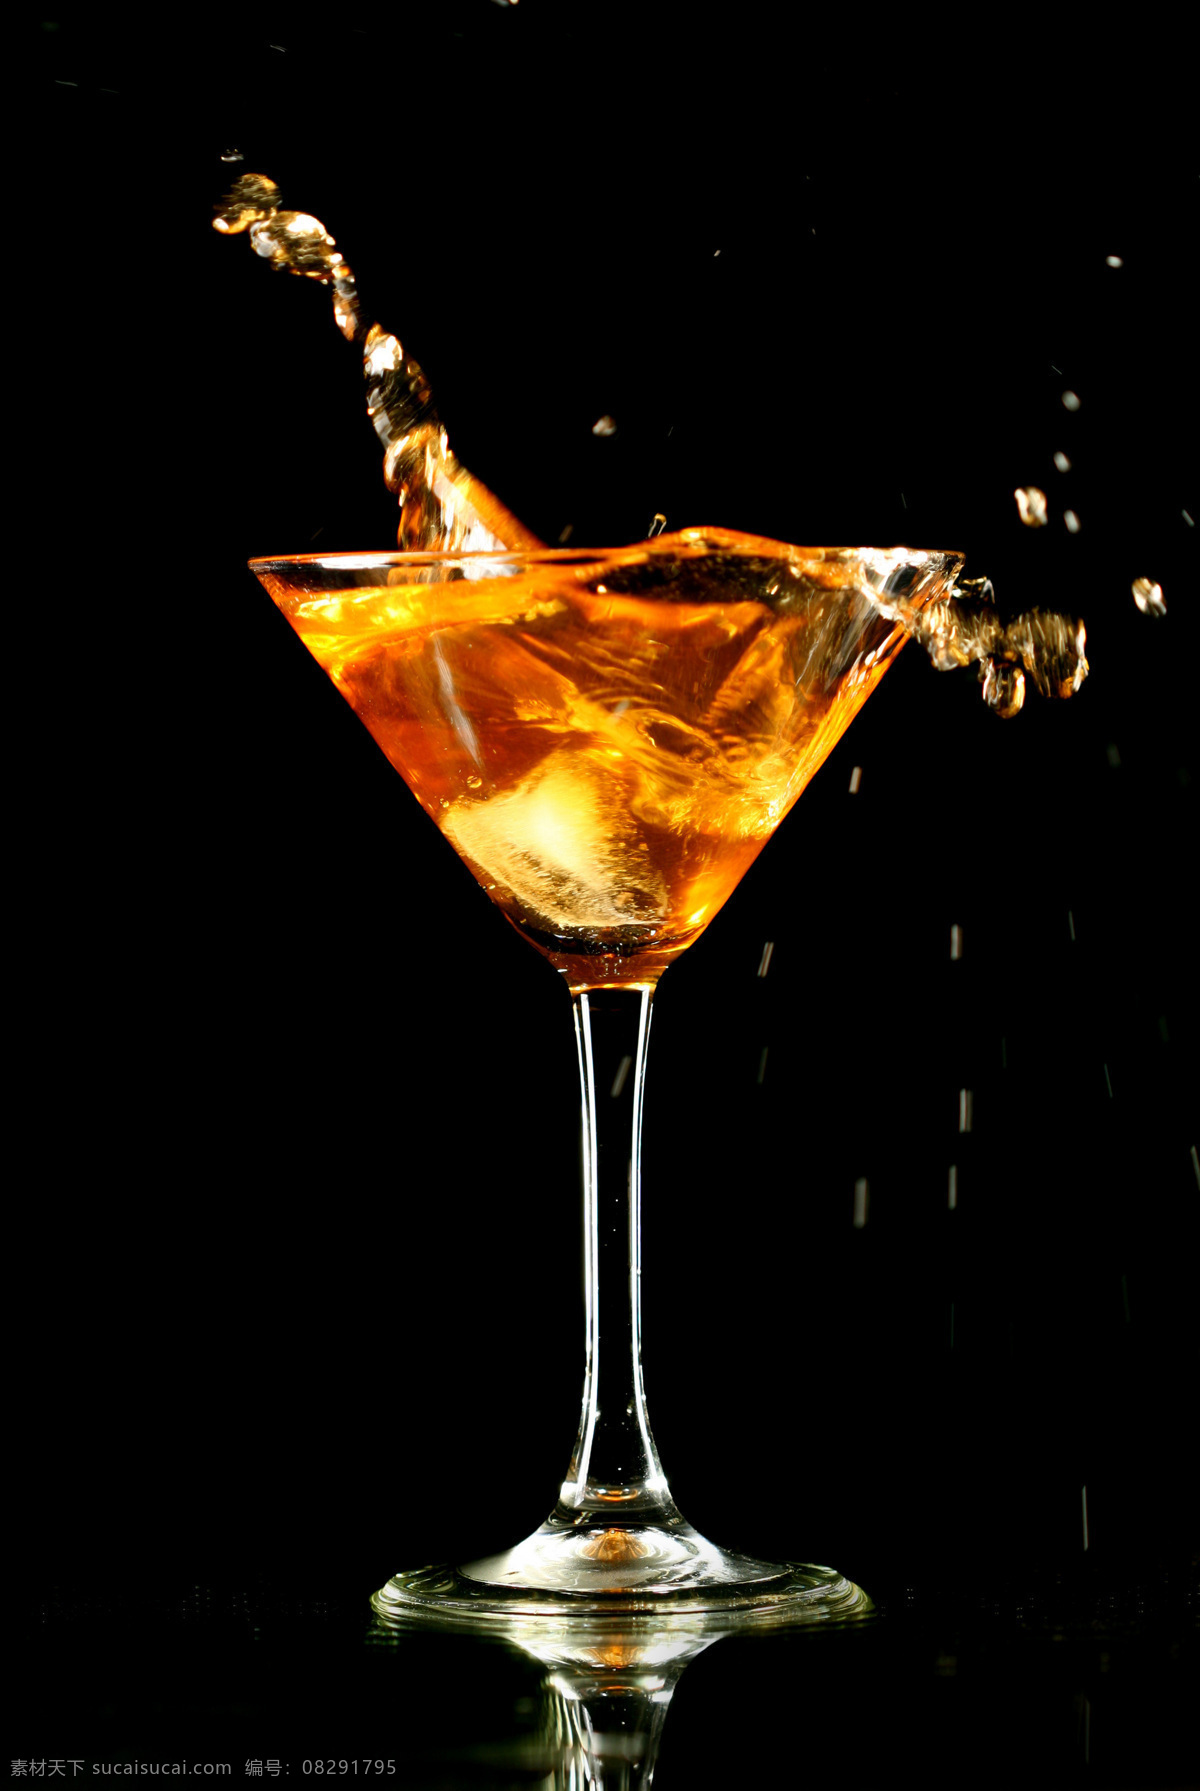 橙黄 马提尼 酒 图 马提尼酒 鸡尾酒 酒杯 酒类 摄影图 橙黄色酒 调酒 酒类图片 餐饮美食